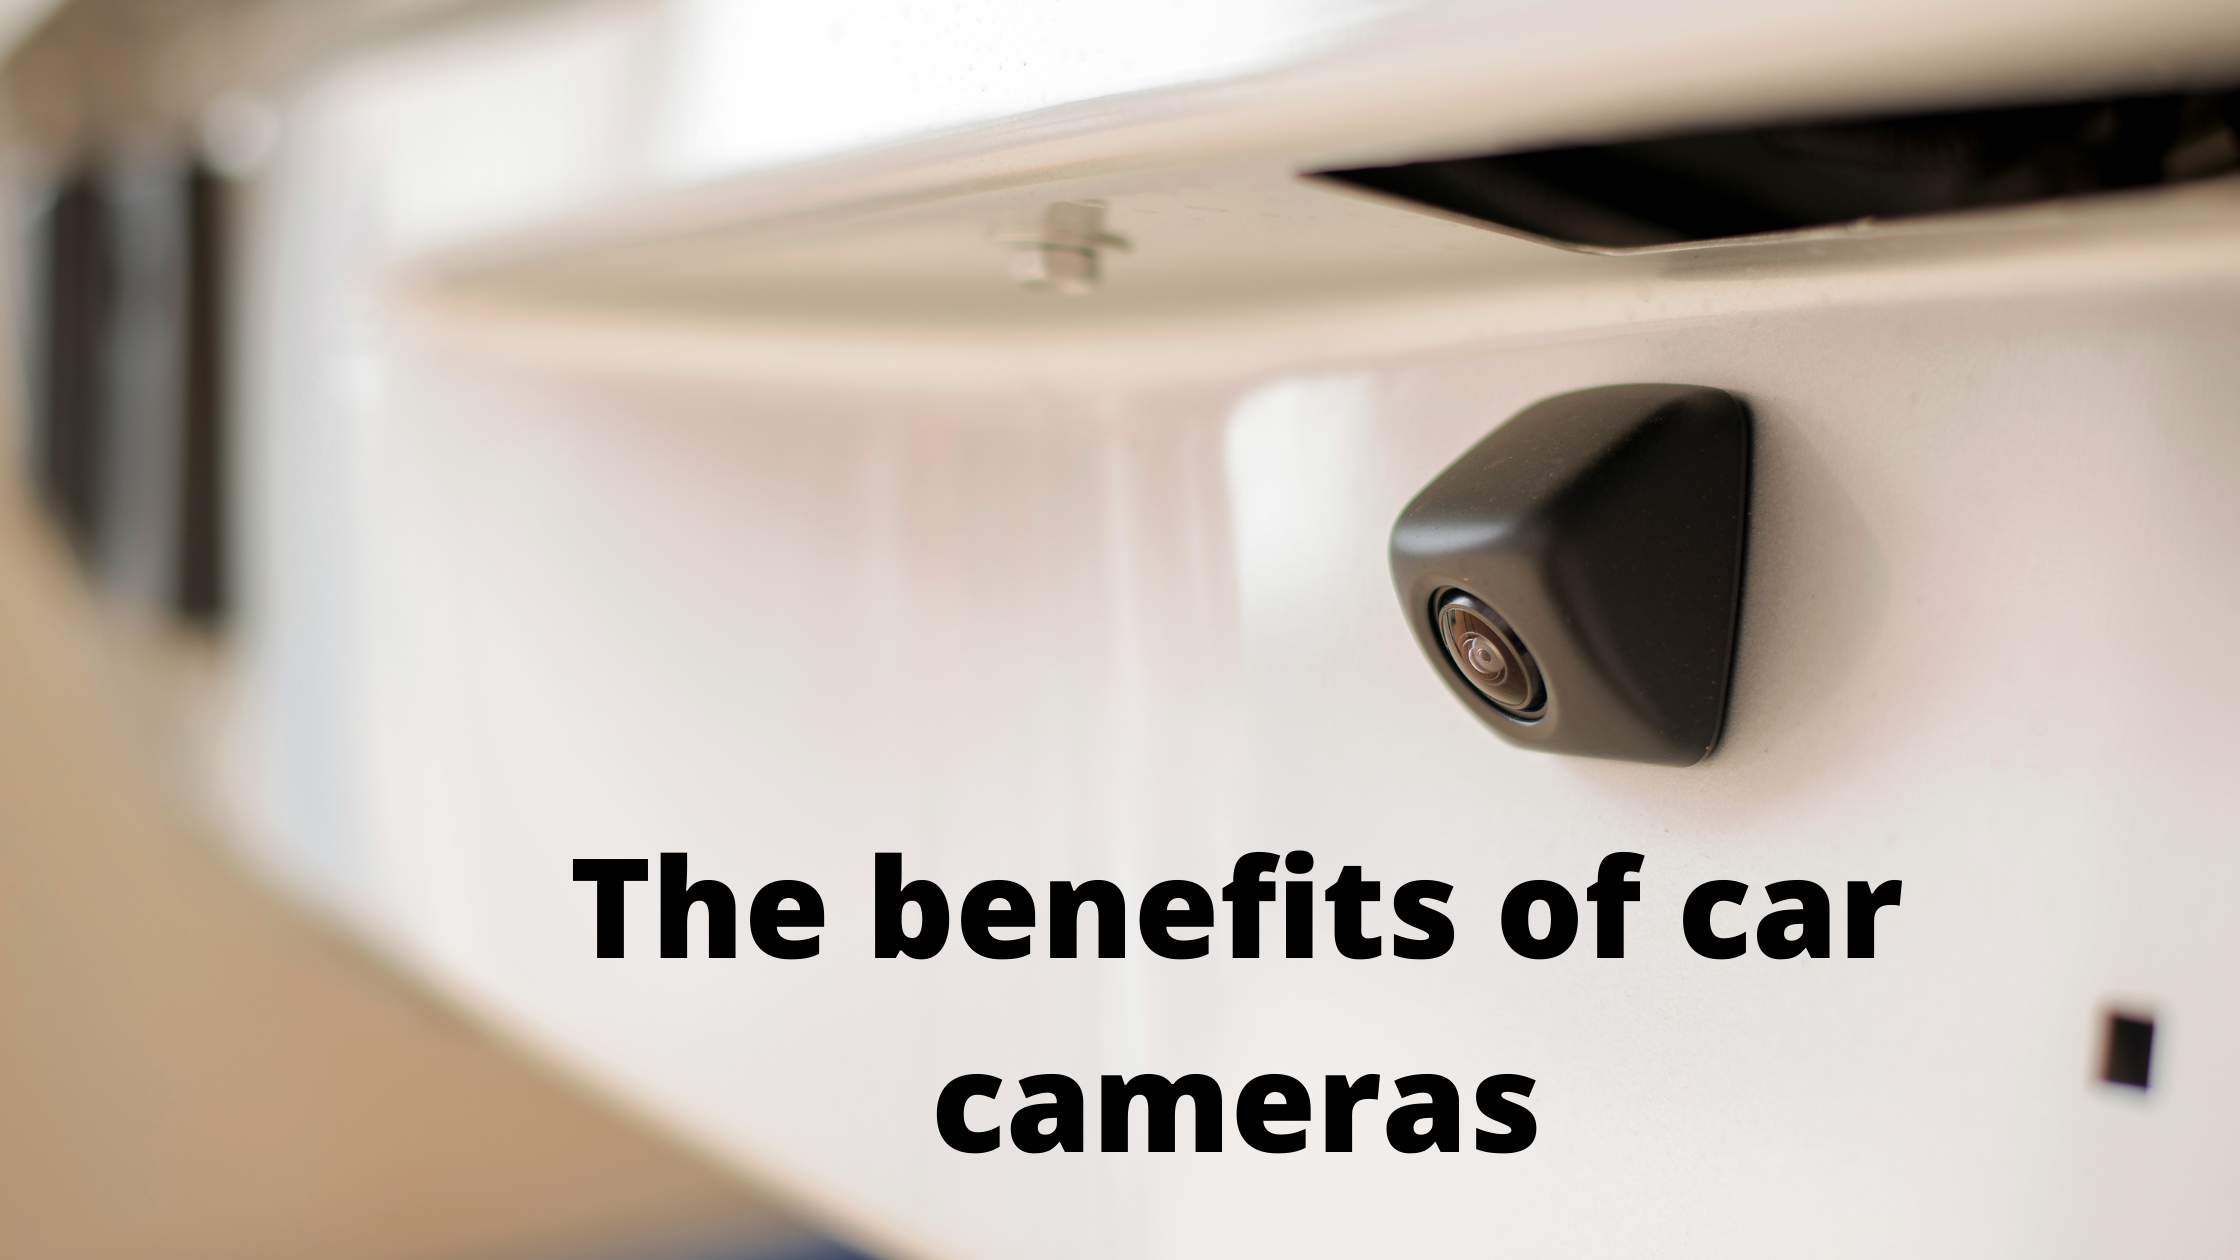 The benefits of car cameras